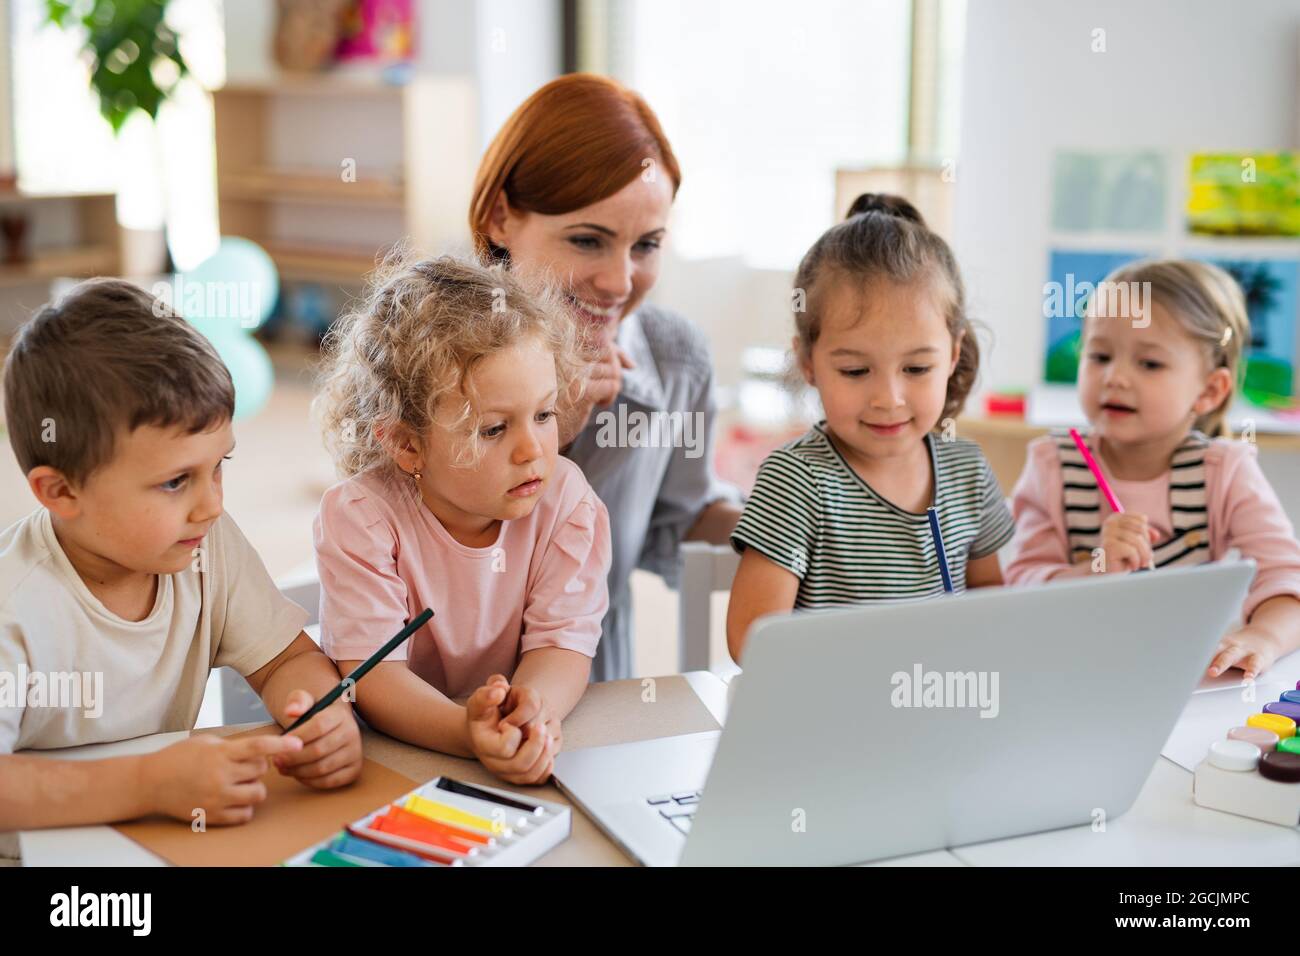 Groupe d'enfants de petite école maternelle avec un professeur sur le sol à l'intérieur dans la salle de classe, utilisant un ordinateur portable. Banque D'Images